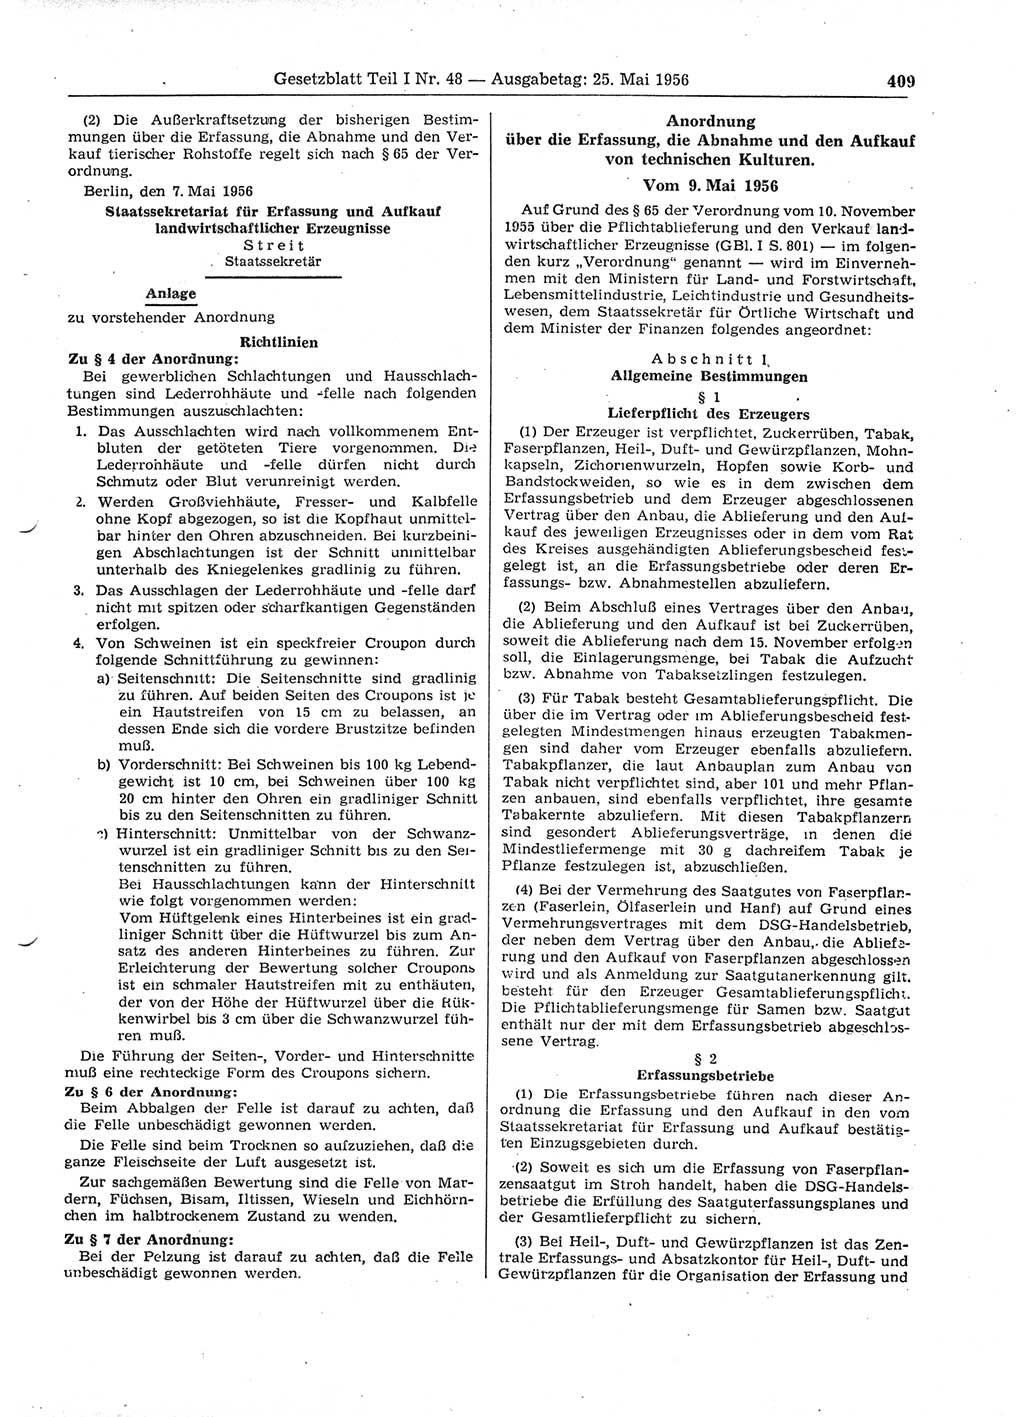 Gesetzblatt (GBl.) der Deutschen Demokratischen Republik (DDR) Teil Ⅰ 1956, Seite 409 (GBl. DDR Ⅰ 1956, S. 409)